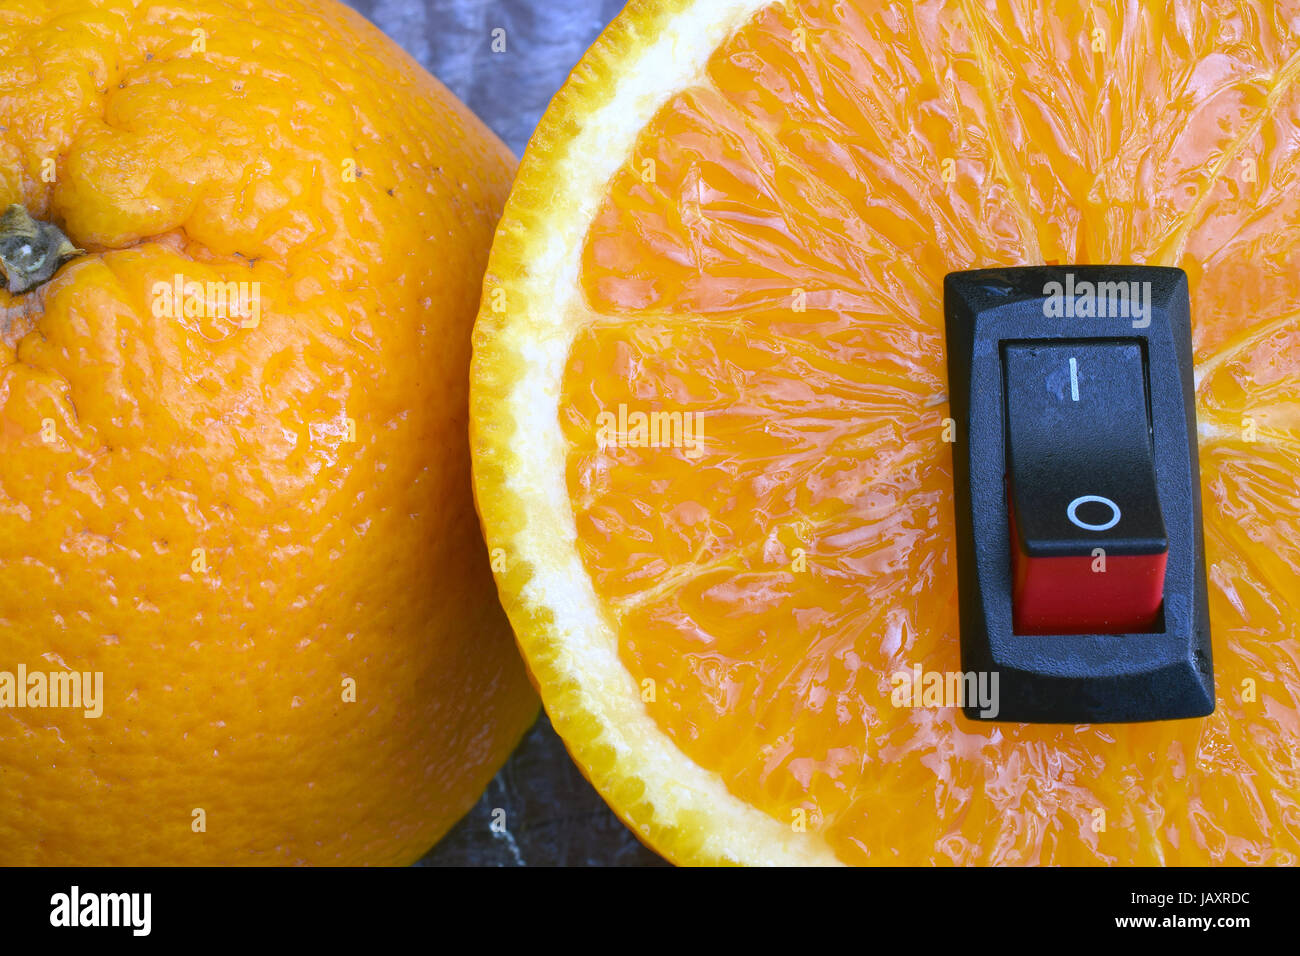 Dimezzato succosa arancione con interruttore di accensione ruotata in posizione on. Cibo sano concetto. Foto Stock